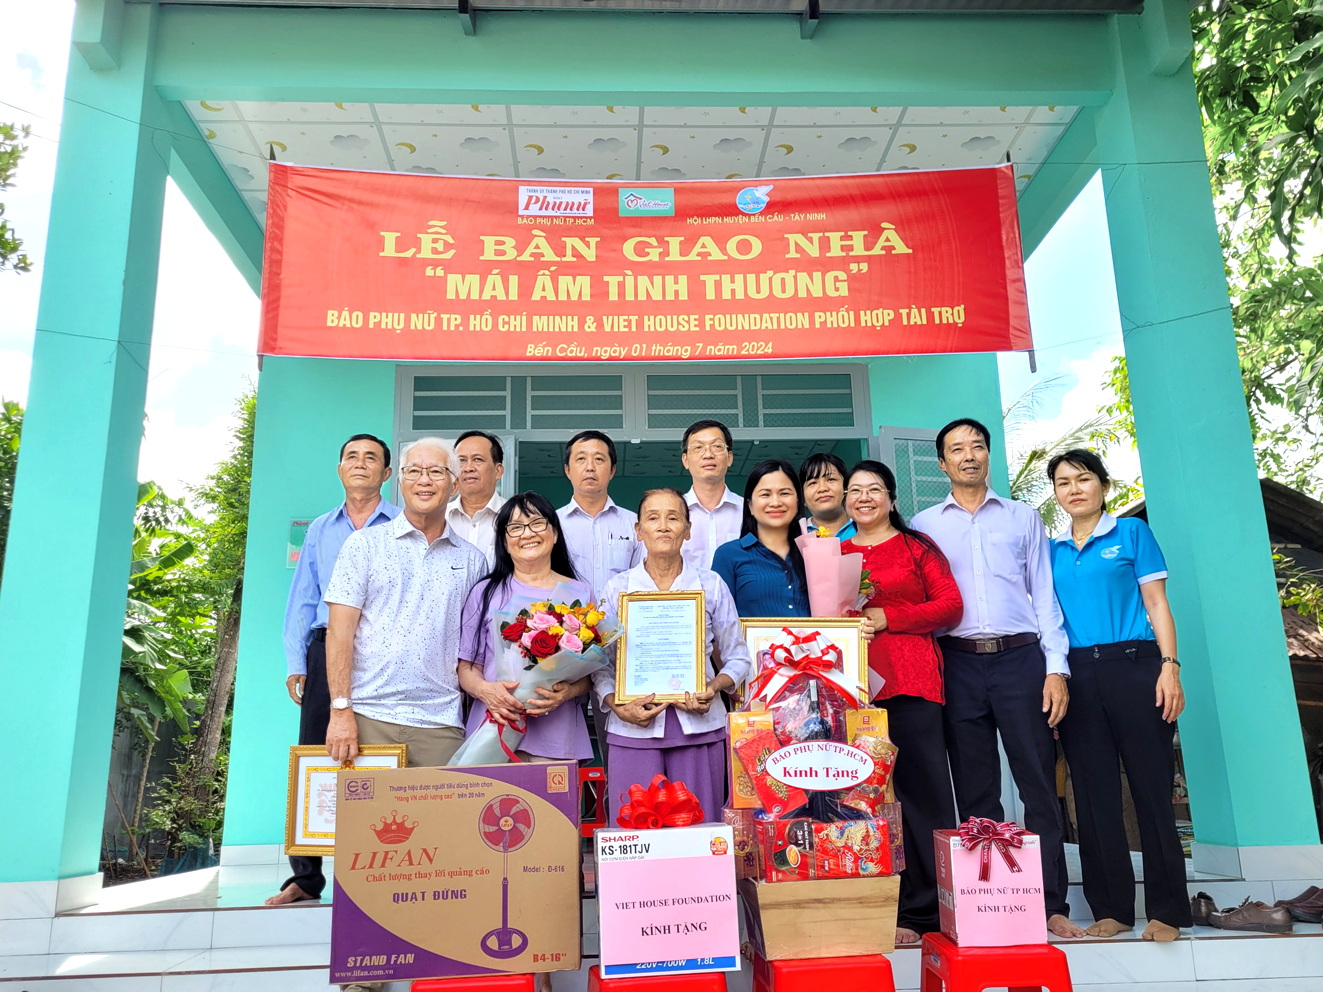 Đại diện Báo Phụ nữ TPHCM, Viet House Foundation và lãnh đạo địa phương chung vui bên căn nhà mới của bà Nhặt